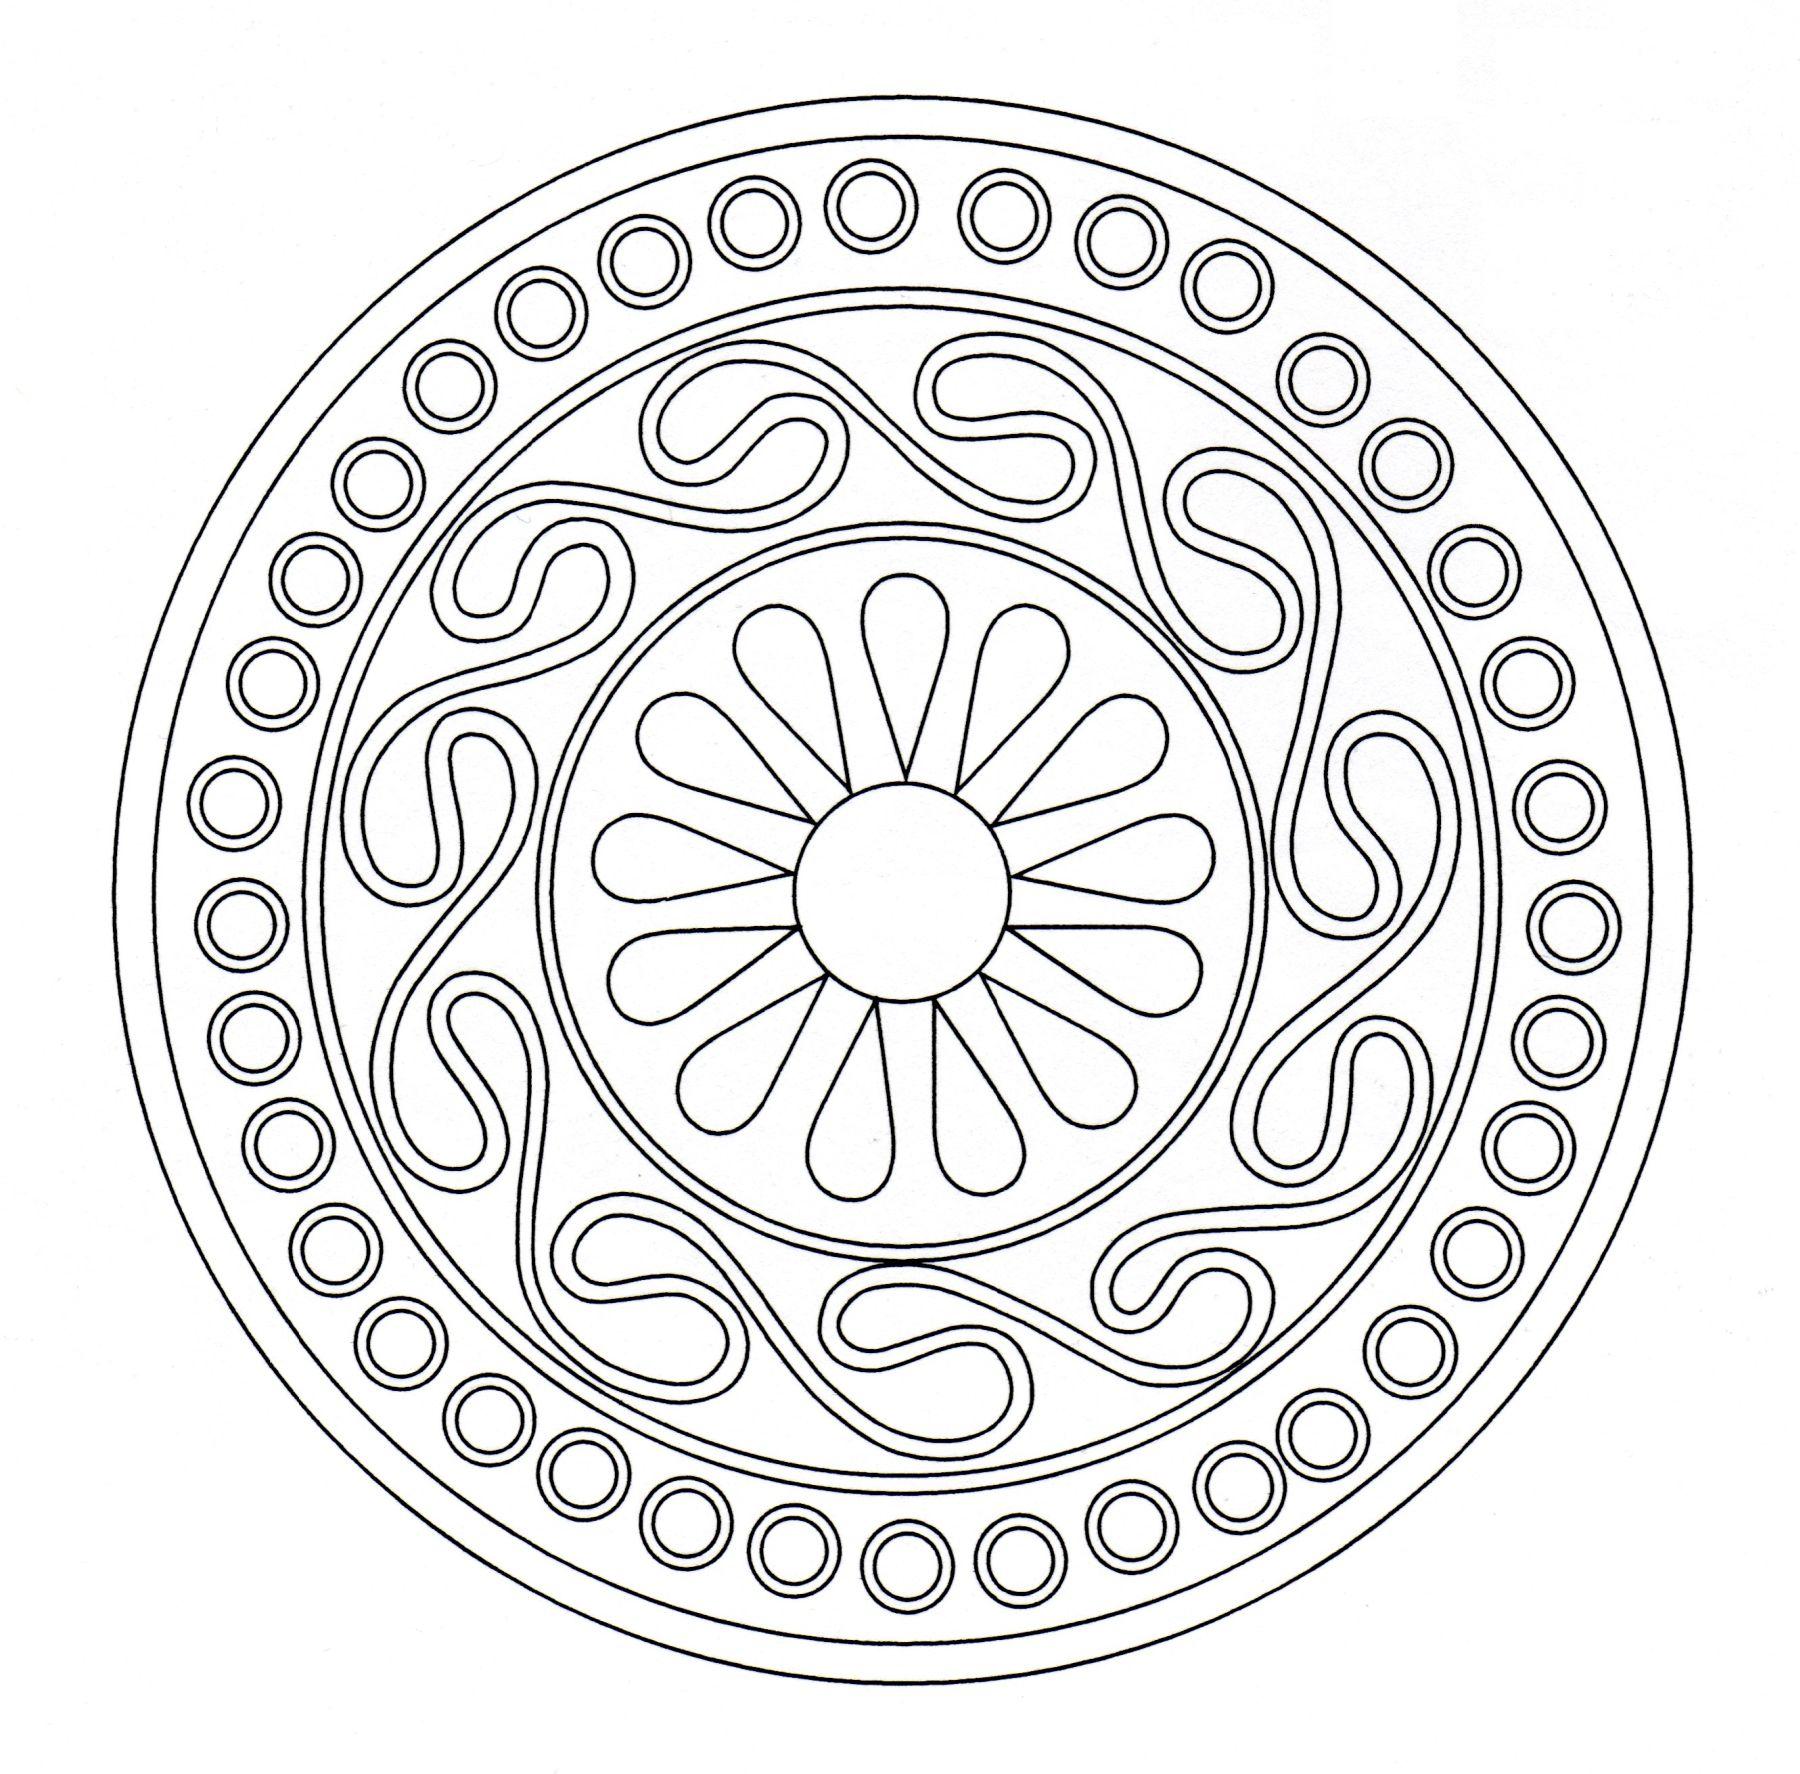 Si vous cherchez un Mandala 'celtique' pas trop compliqué à colorier, mais avec quand même un niveau de difficulté relatif, celui-ci est parfait pour vous.